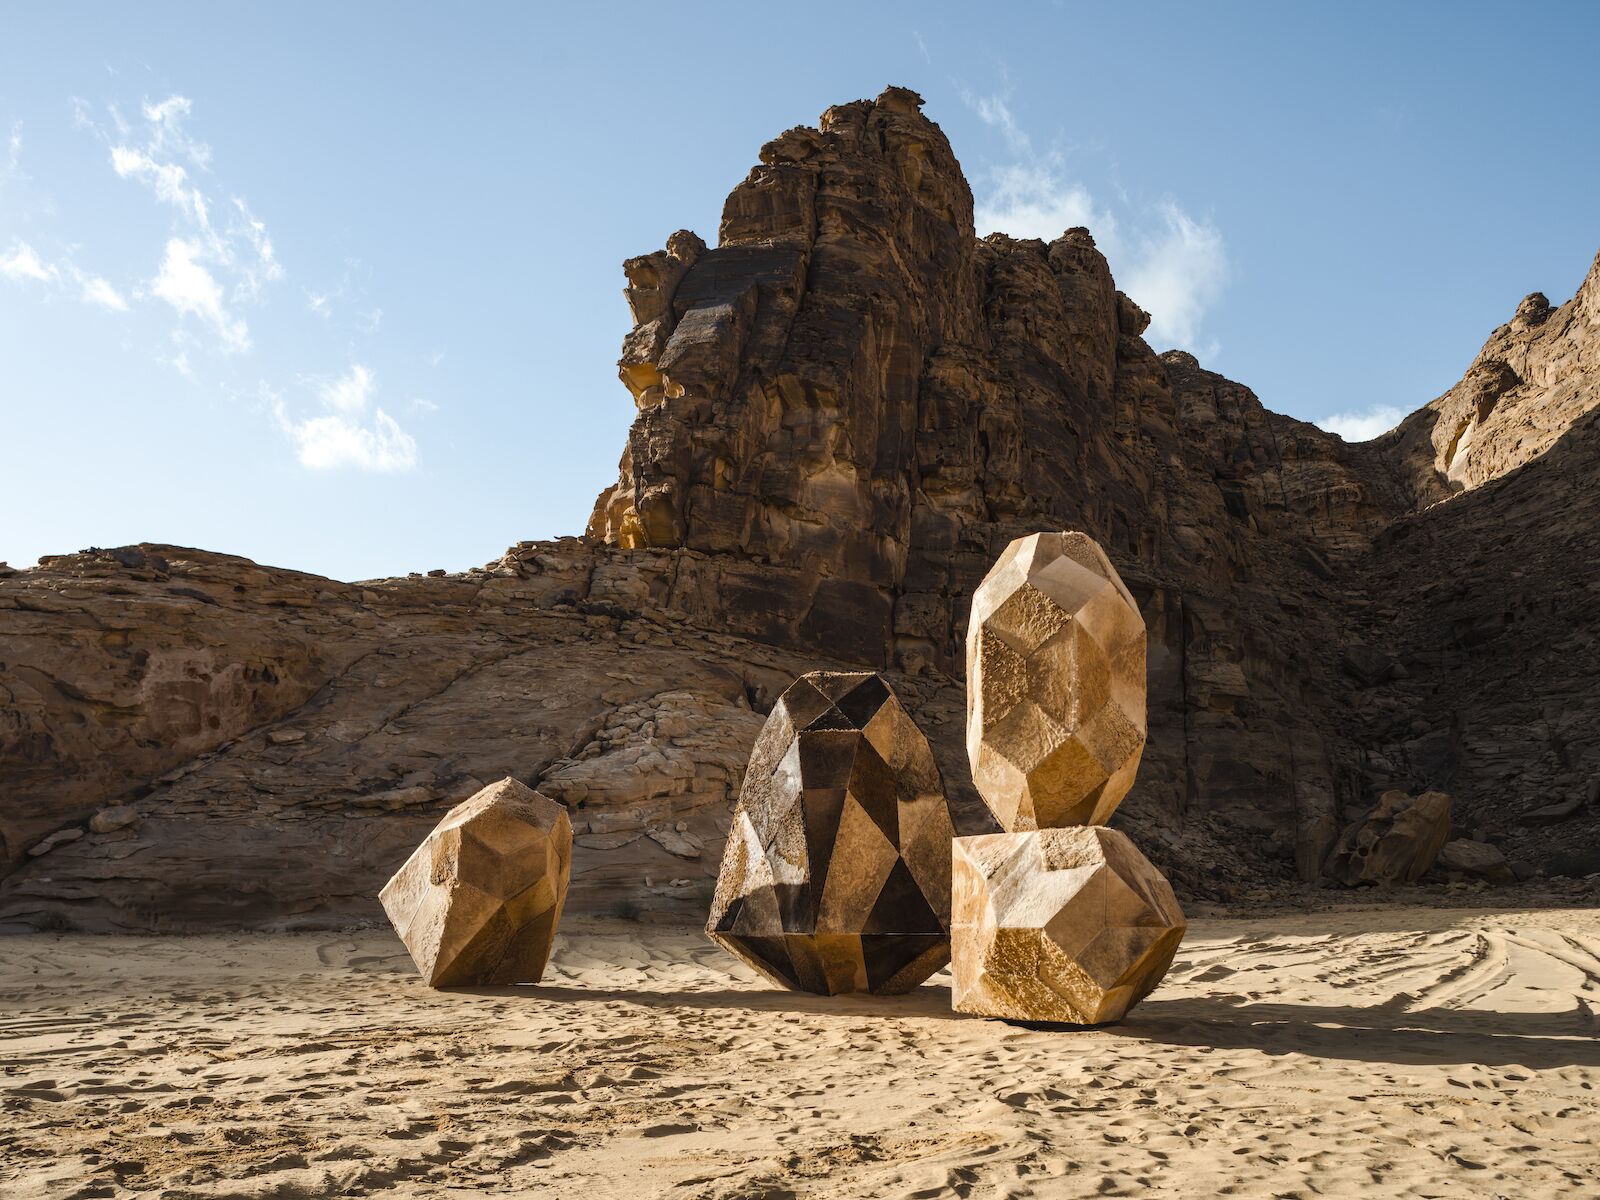 Art installation in the Saudi Arabian desert for Desert X 2022.